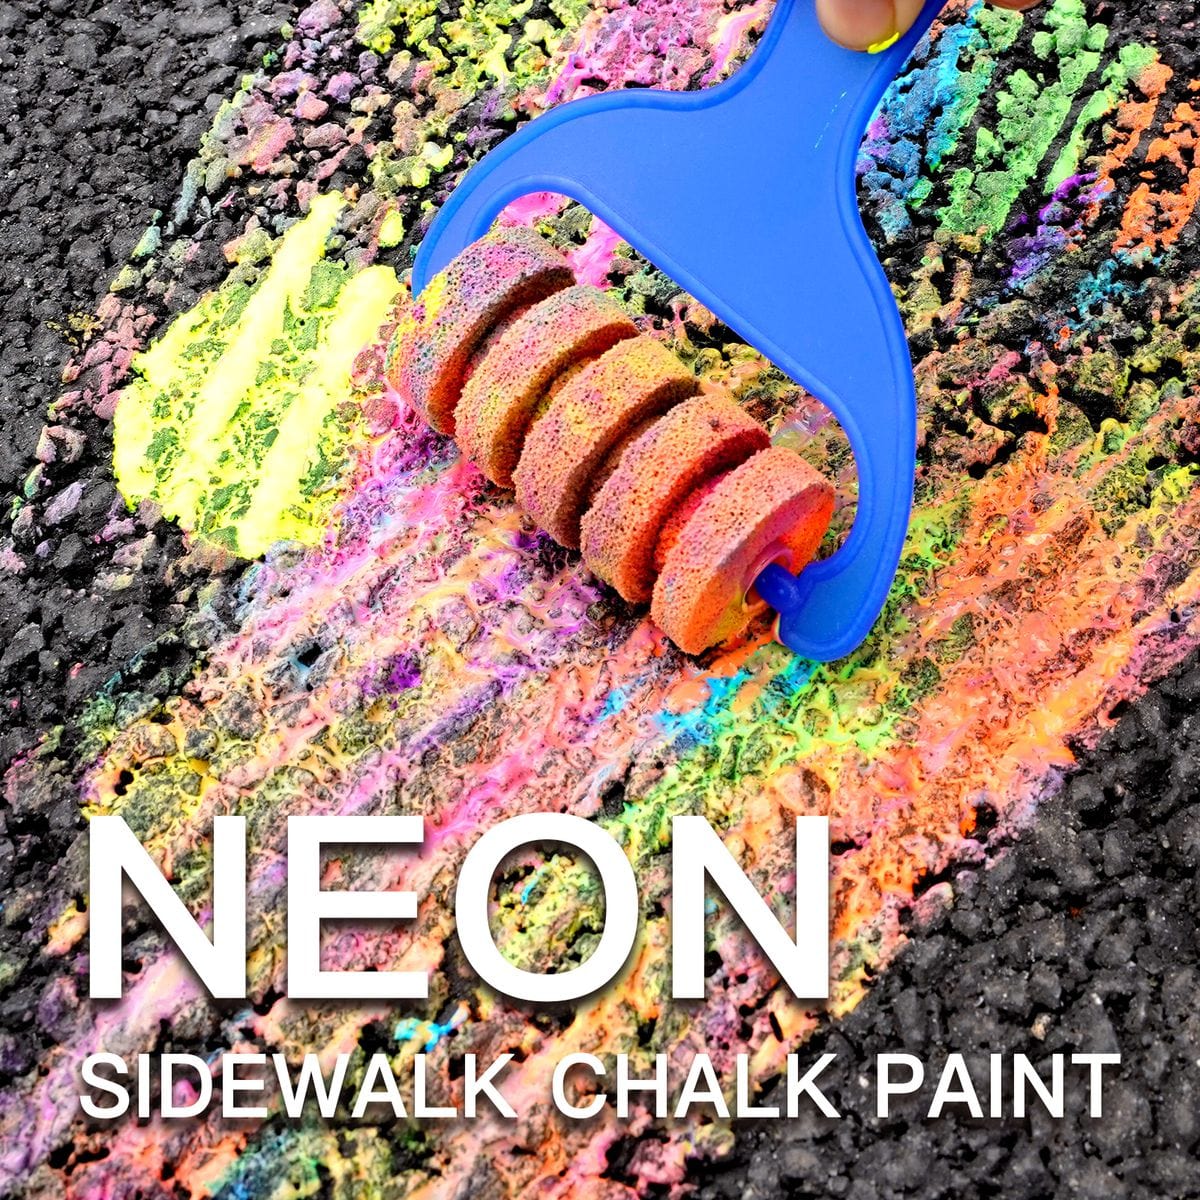 Sidewalk Chalk Paint Set with 6 Neon Paint Colors